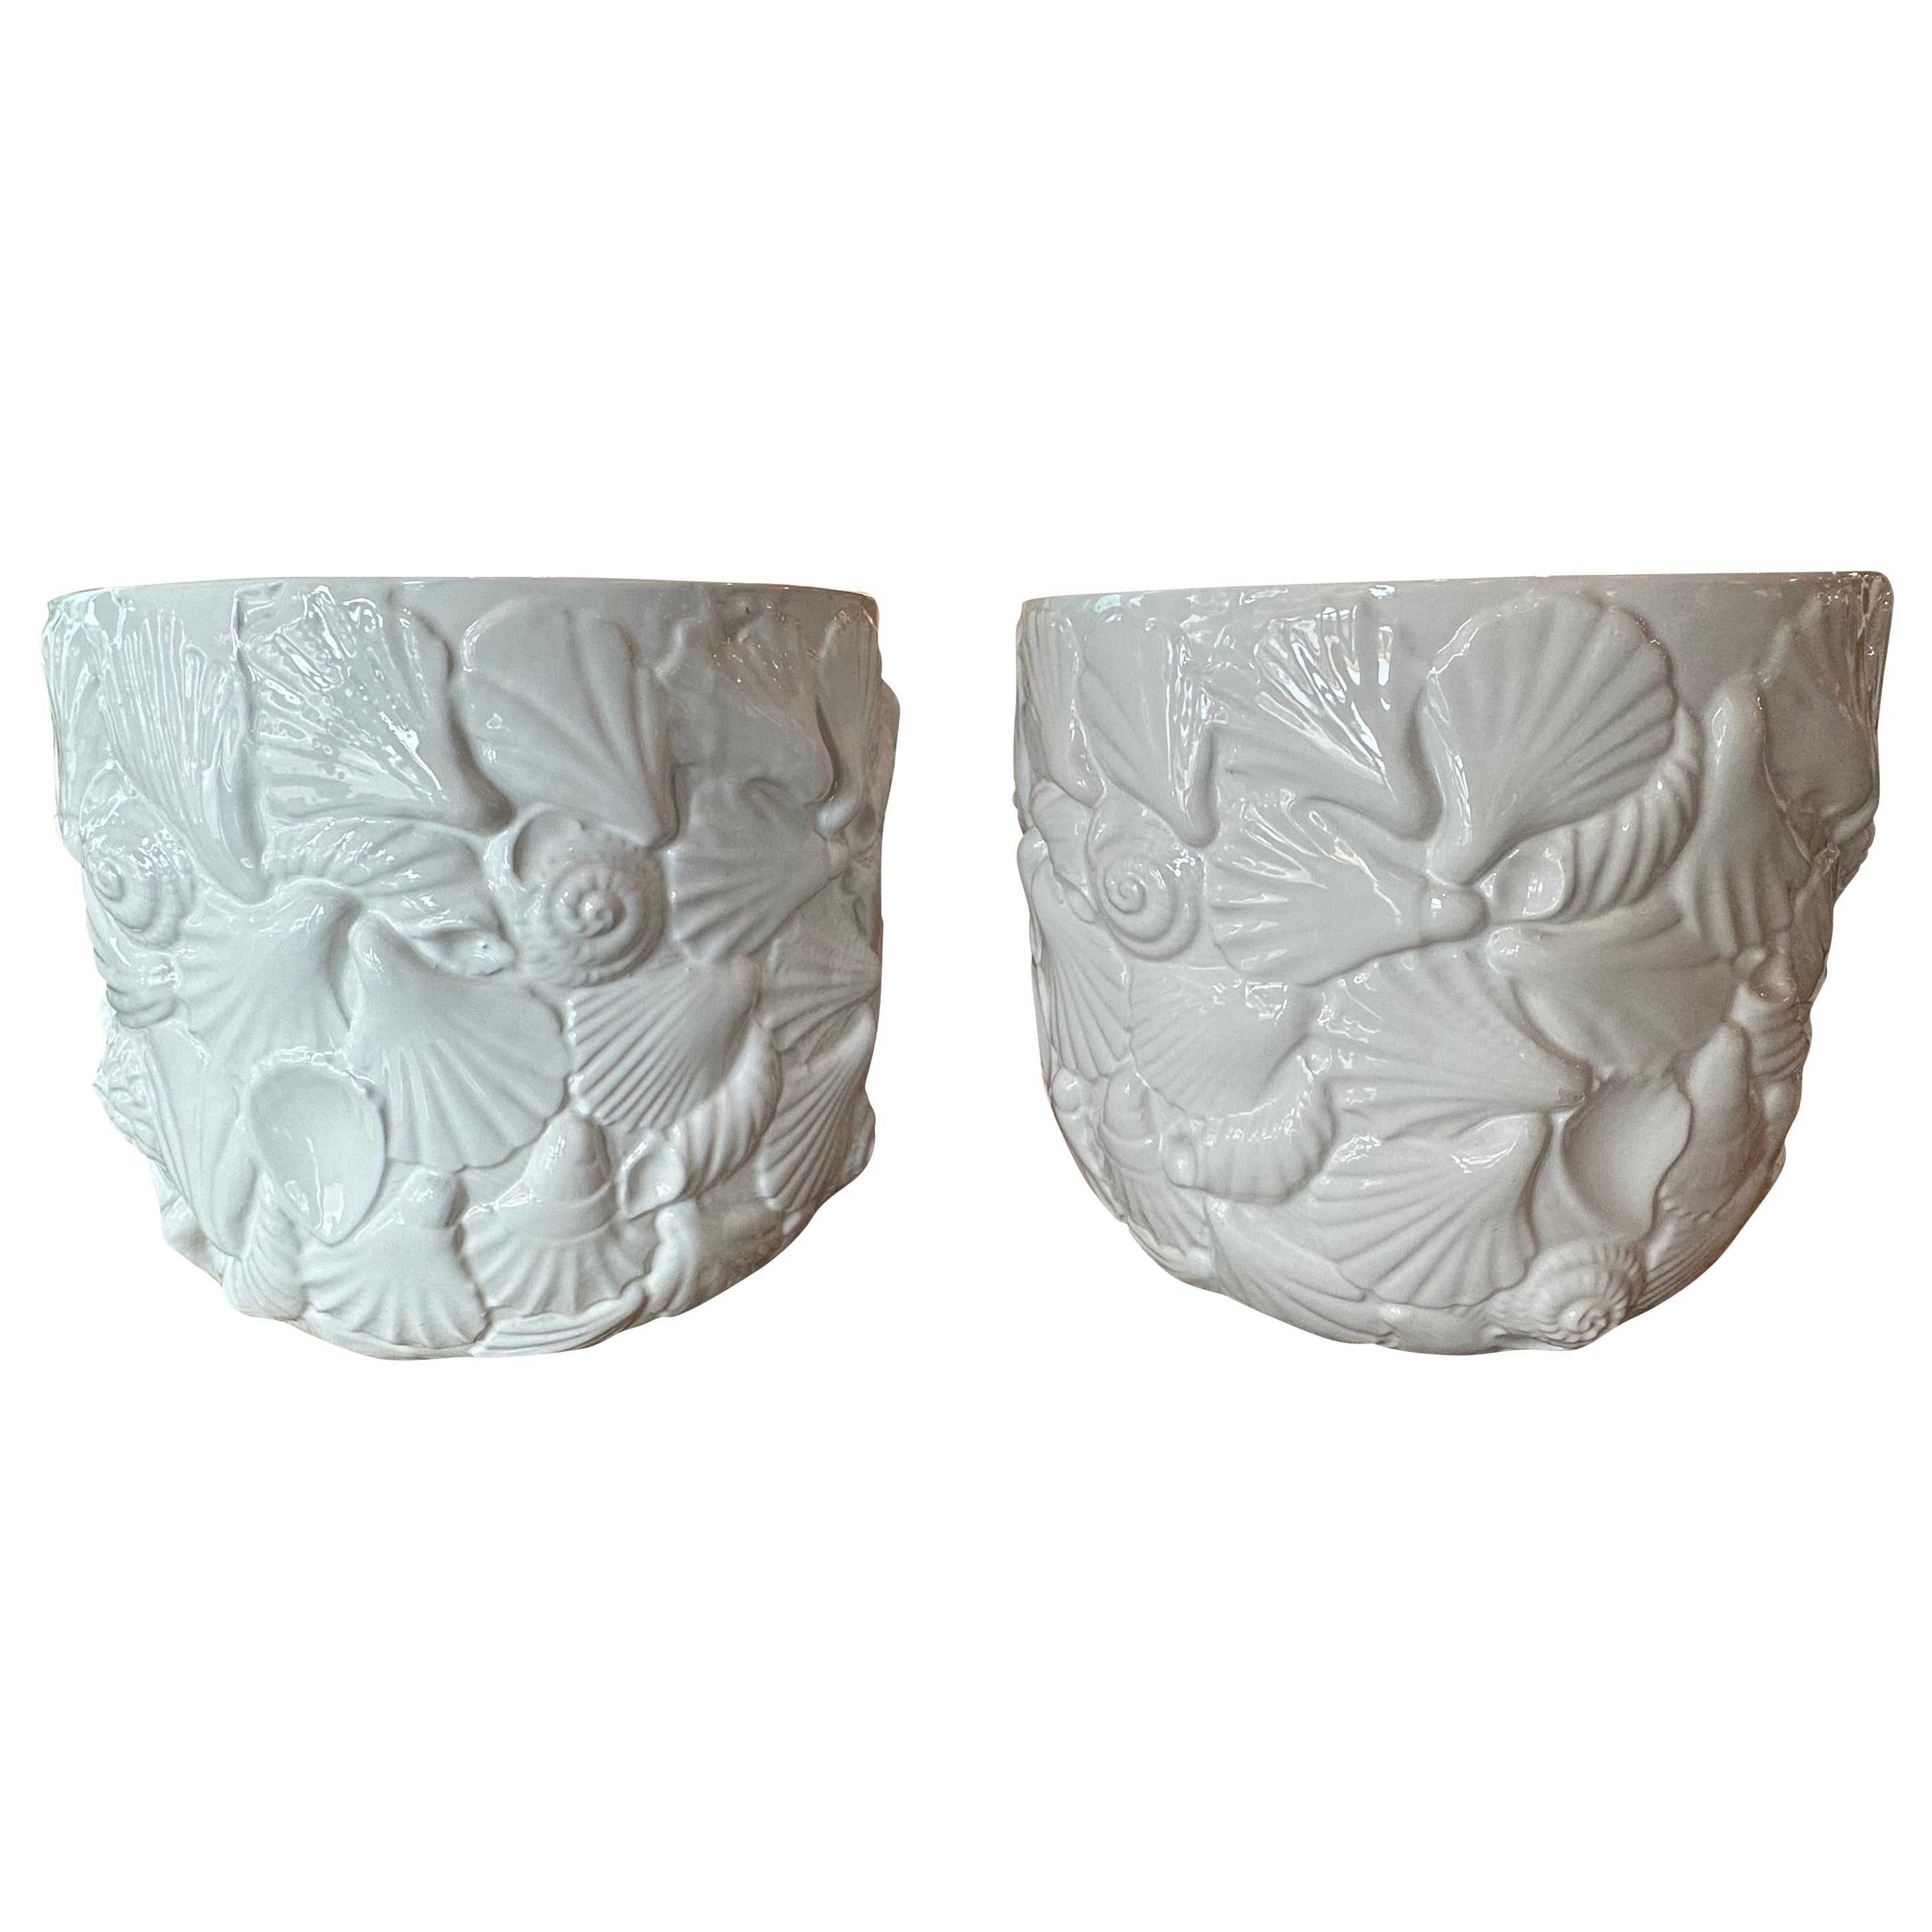 Pair Italian Ceramic Shell Seashell Flower Pots Planters Rosenthal Netter